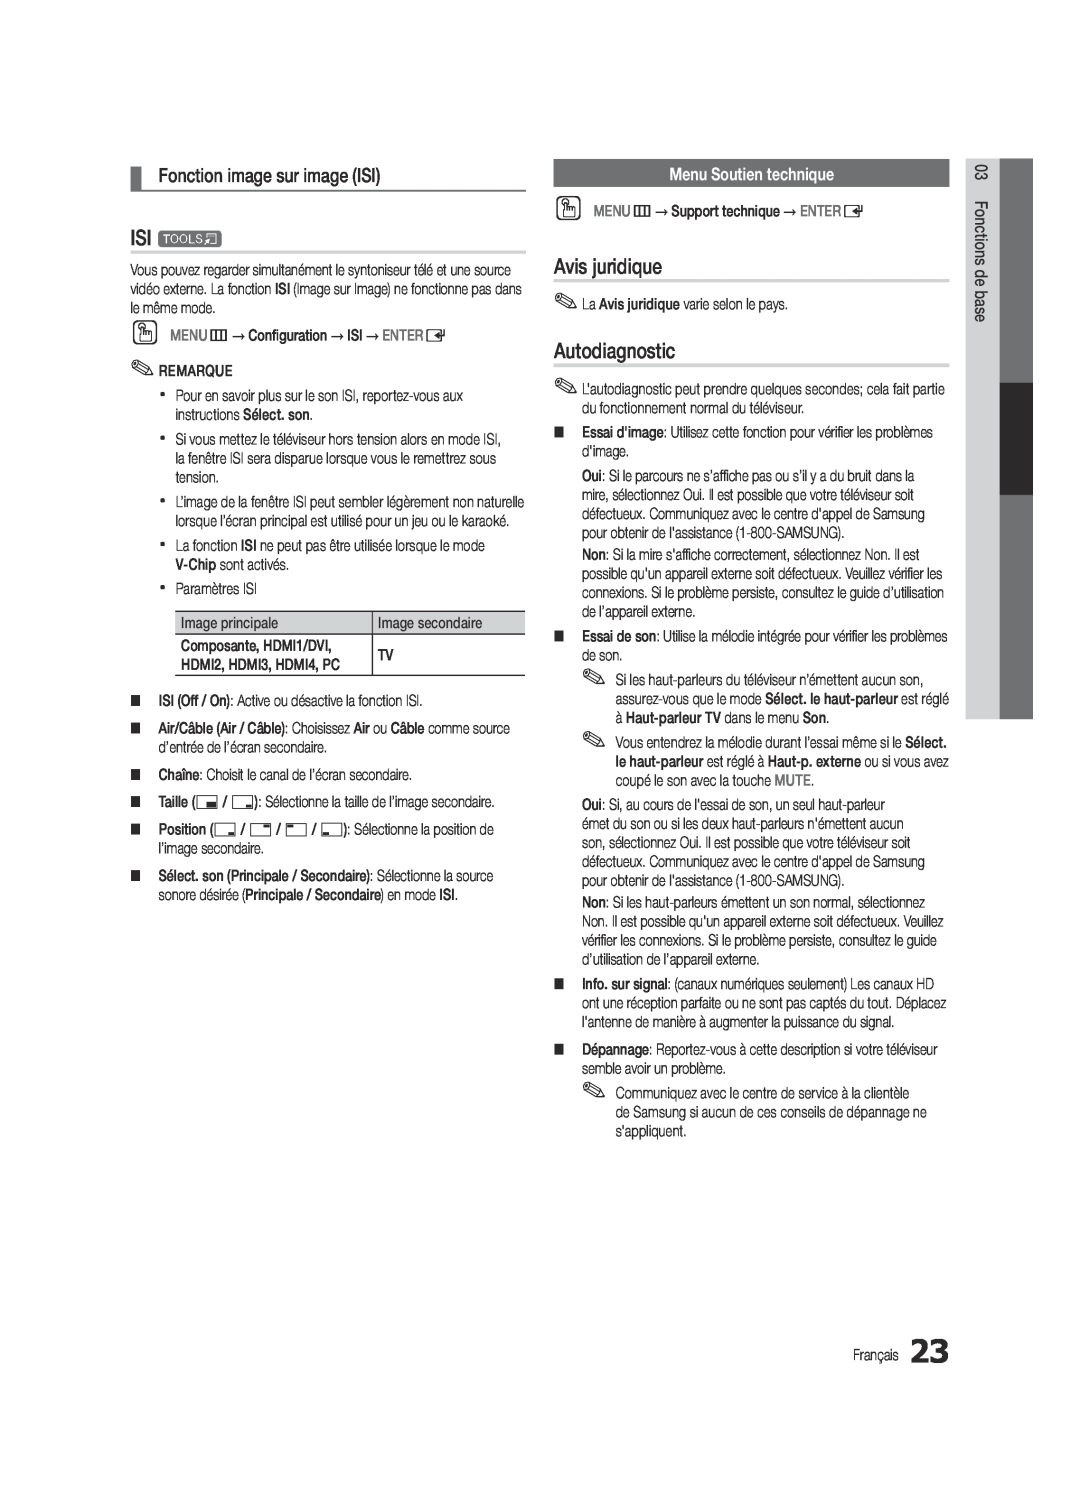 Samsung UC6300-ZC user manual ISI t, Avis juridique, Autodiagnostic, Fonction image sur image ISI, Menu Soutien technique 